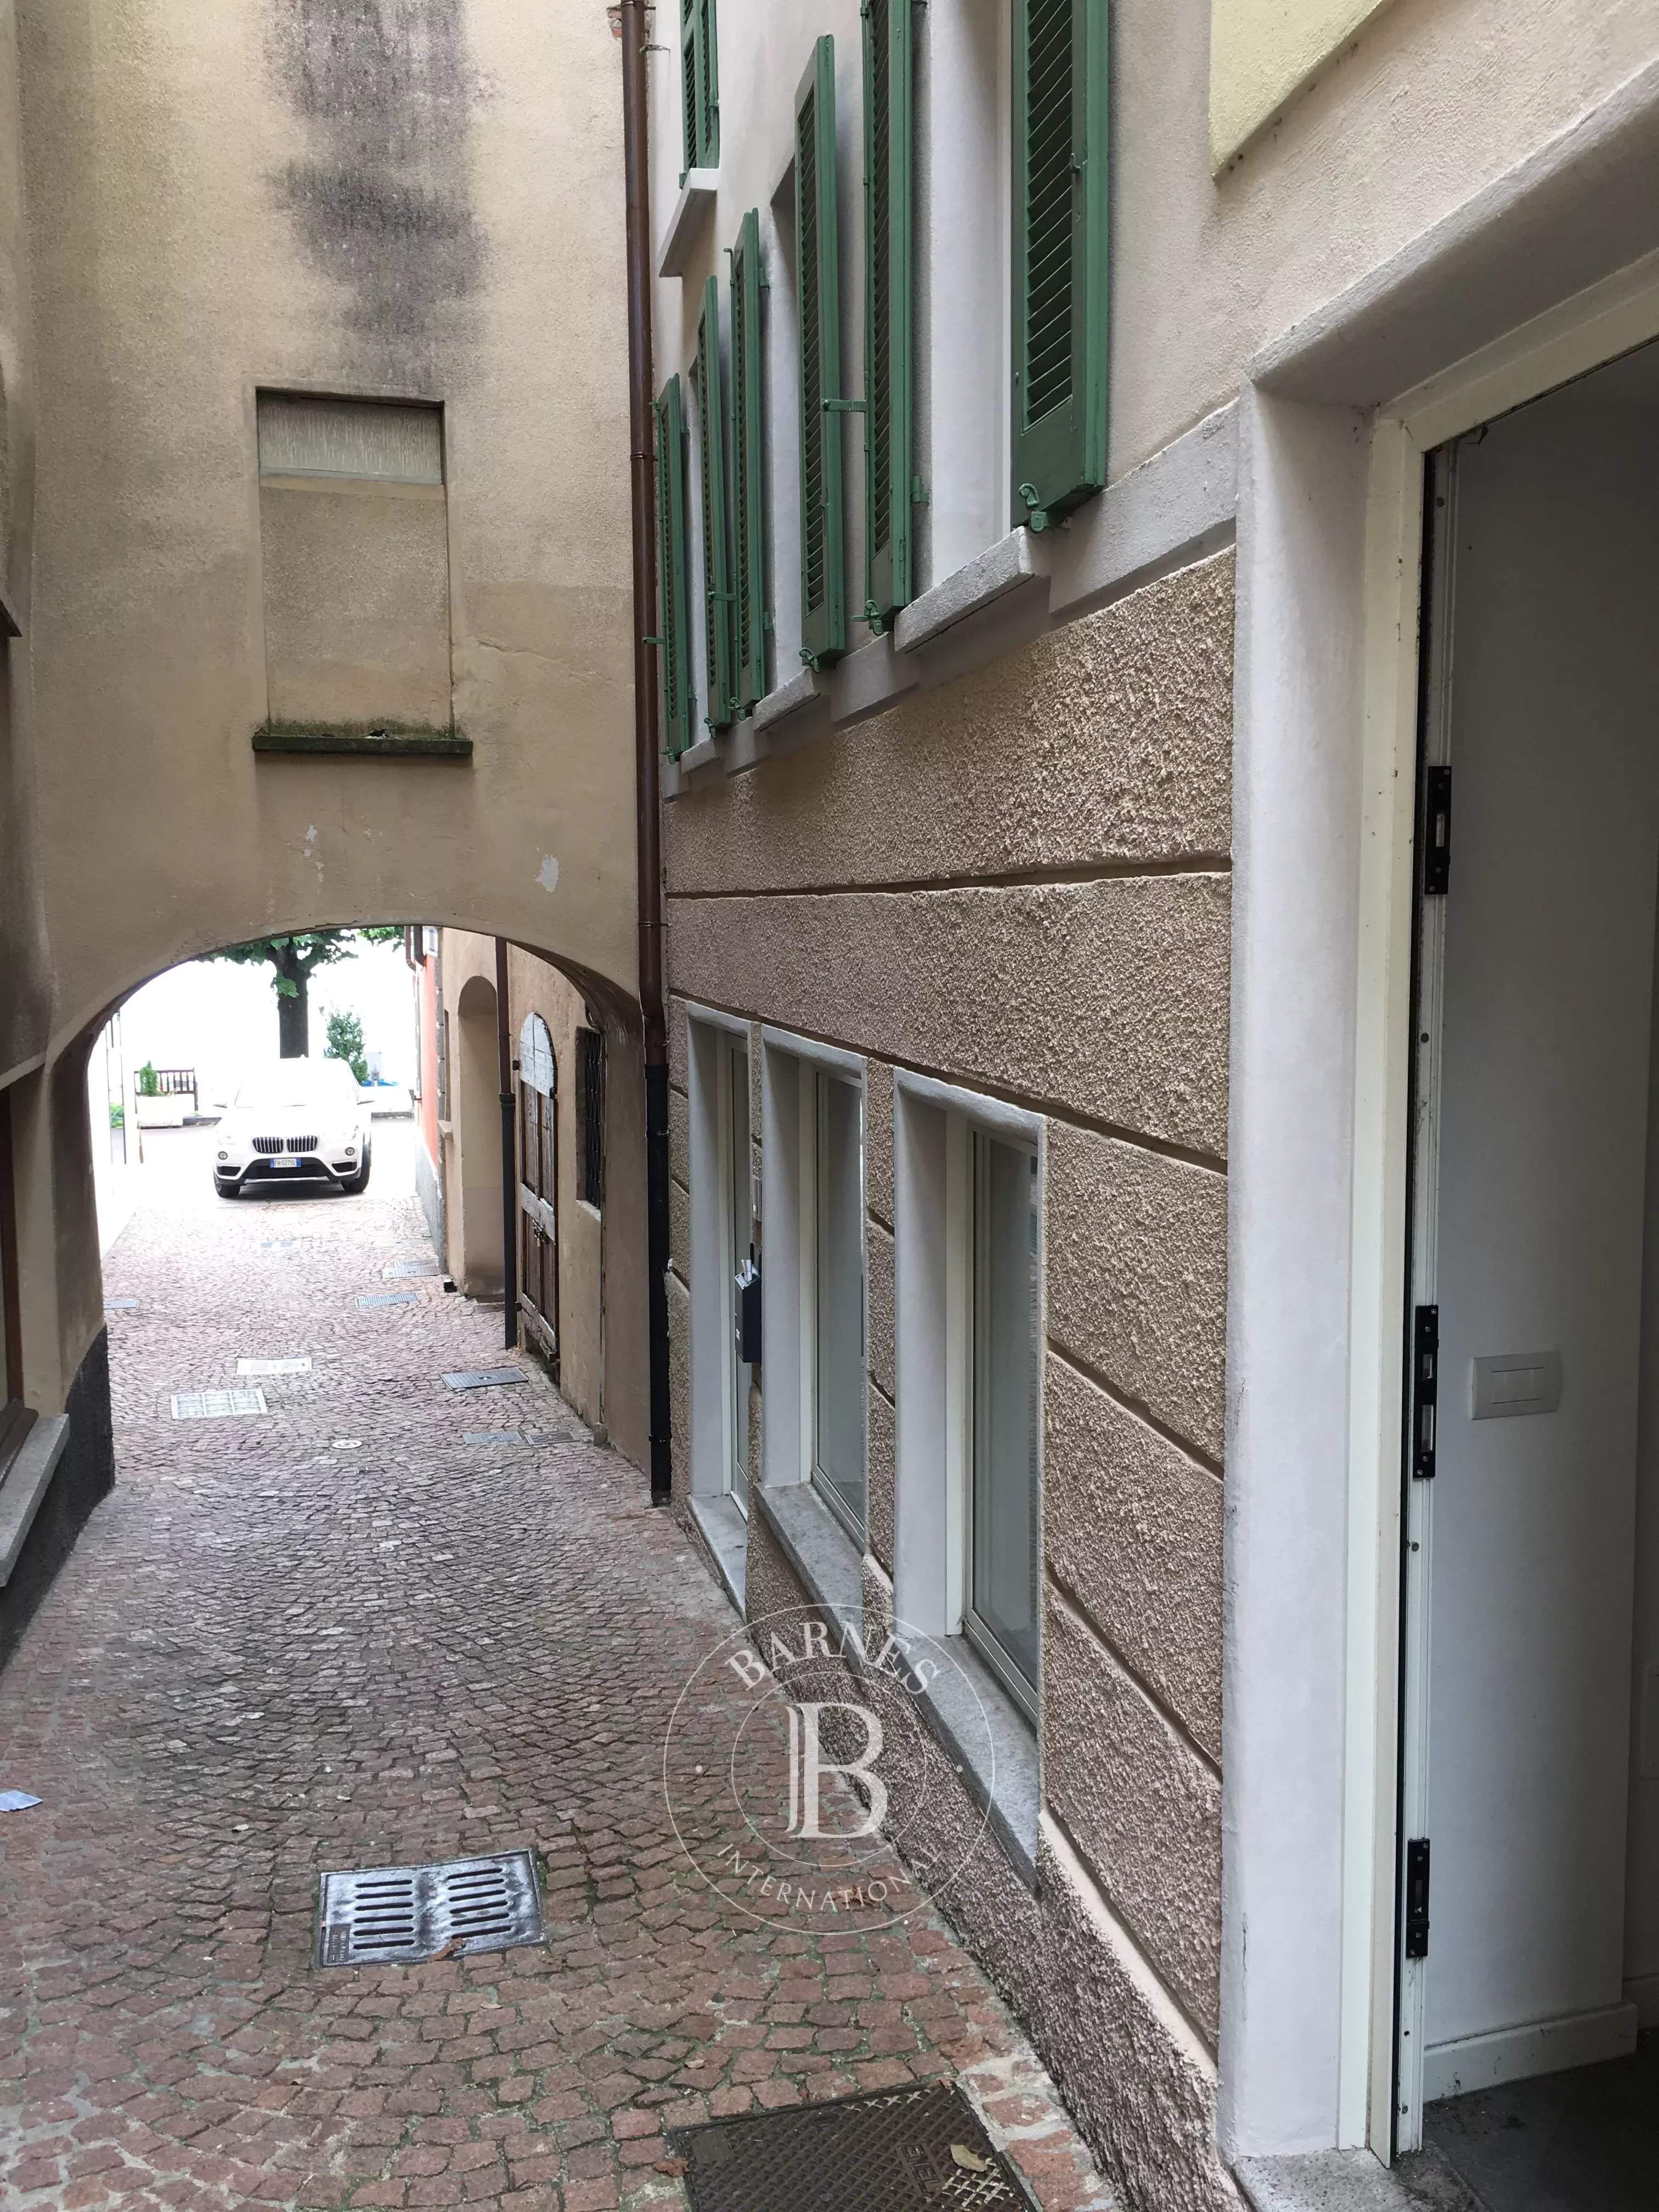 Campione d'Italia  - Apartment  - picture 20